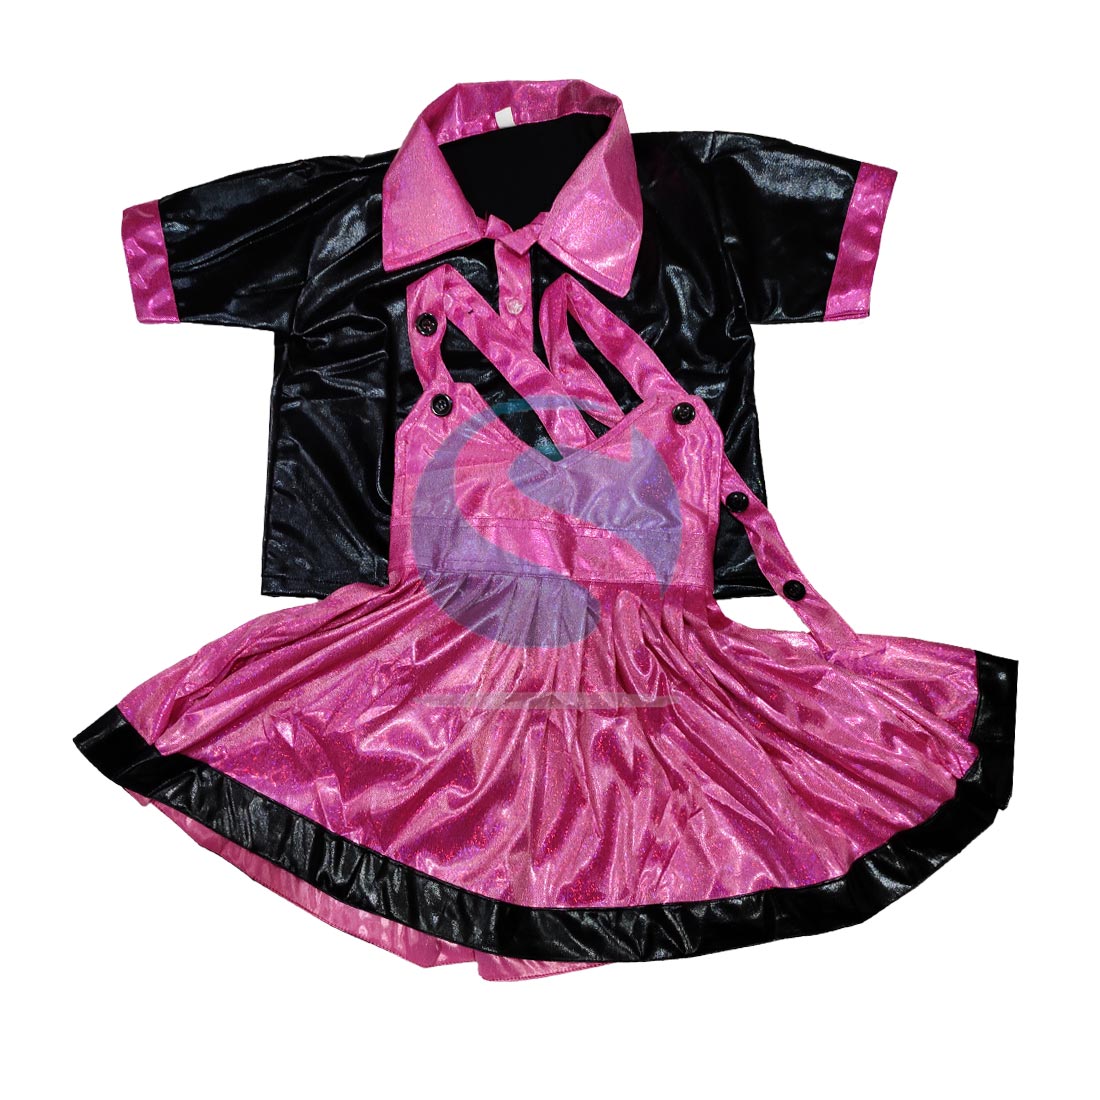 KAKU FANCY DRESSES Western Dance Dress Skirt Top Costume Set  -Magenta-Silver, 3-4 Years, for Girls Kids Costume Wear Price in India -  Buy KAKU FANCY DRESSES Western Dance Dress Skirt Top Costume